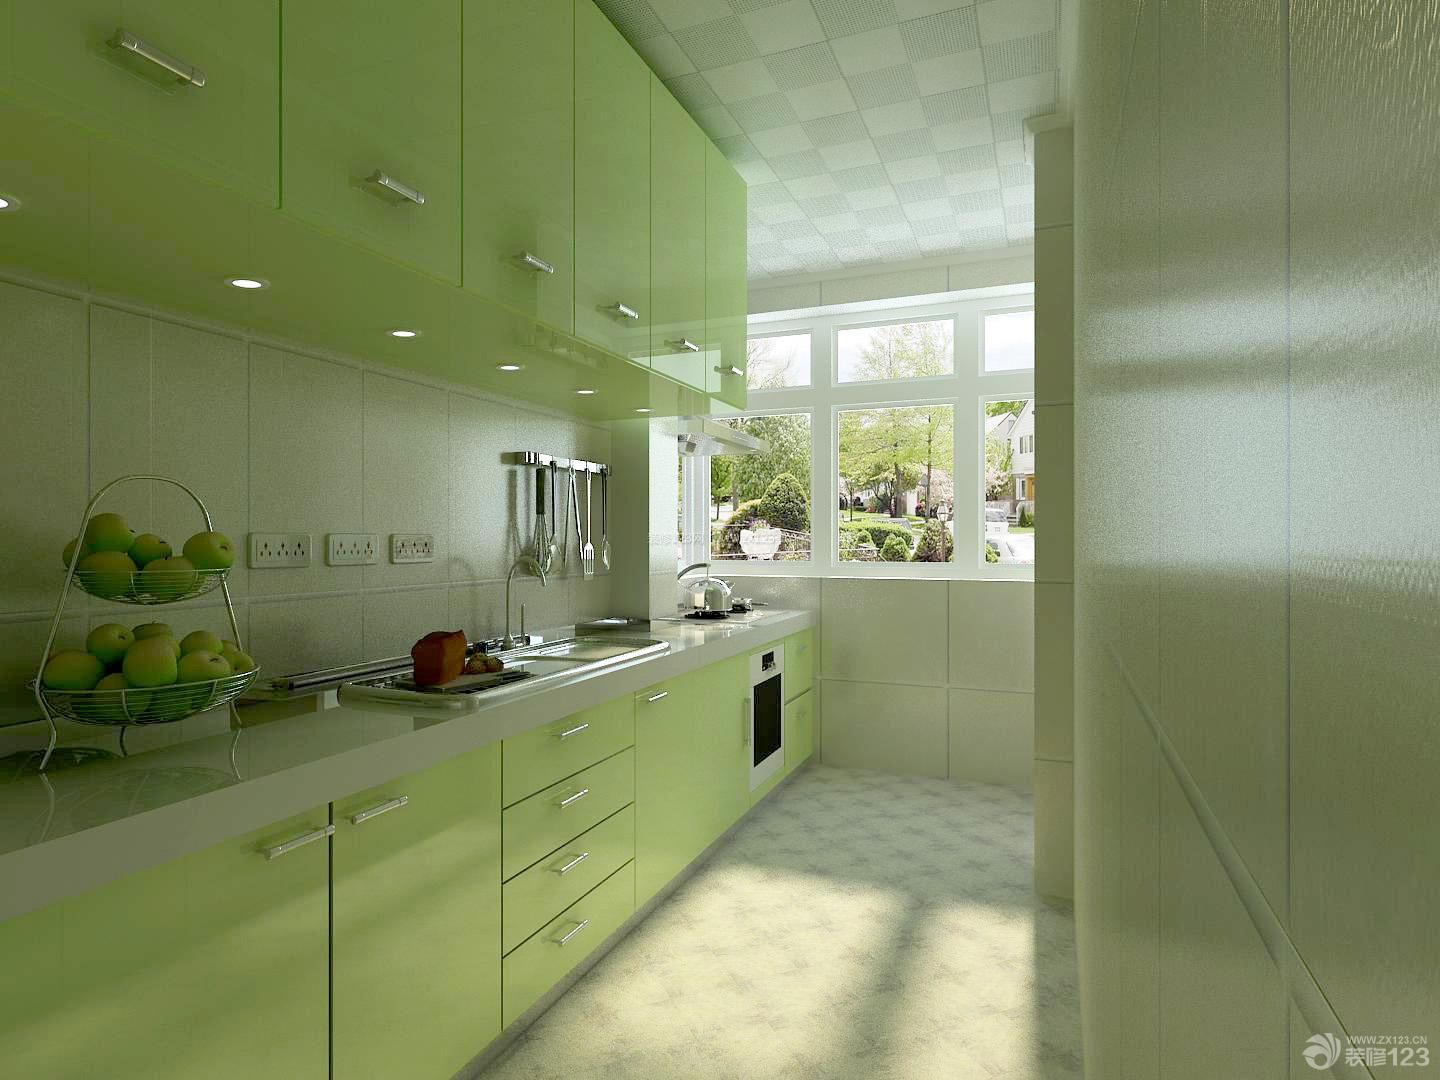 三室两厅两卫 厨房颜色 厨房设计 厨房设备 厨房挂件 烤漆橱柜 绿色橱柜 花纹瓷砖 装饰品 墙砖墙面 白色墙面 厨卫集成吊顶 